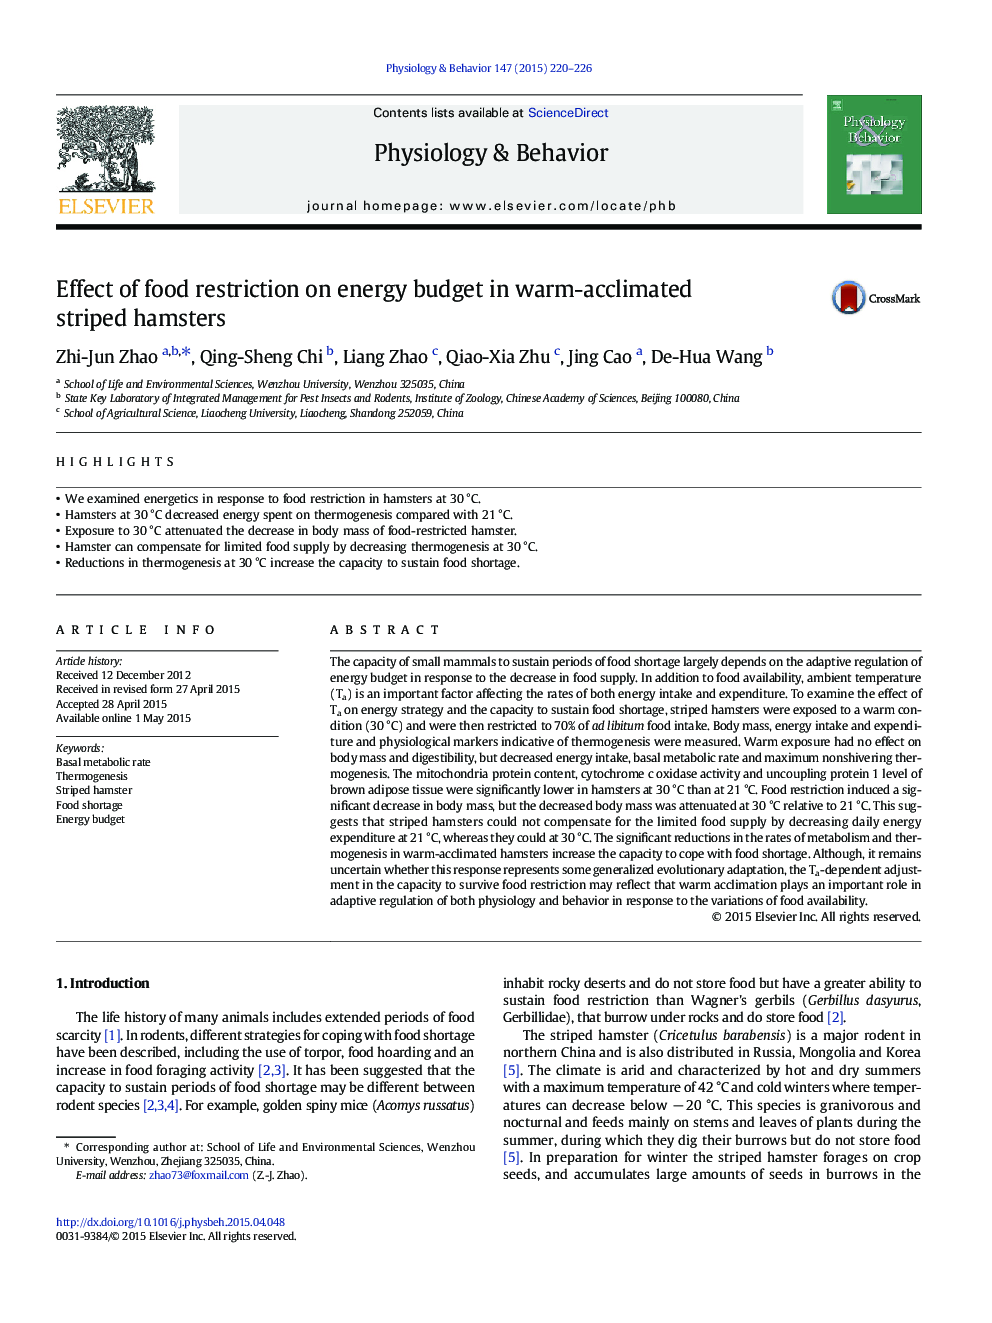 تأثیر محدودیت غذا بر بودجه انرژی در همسترهای راه گرم 